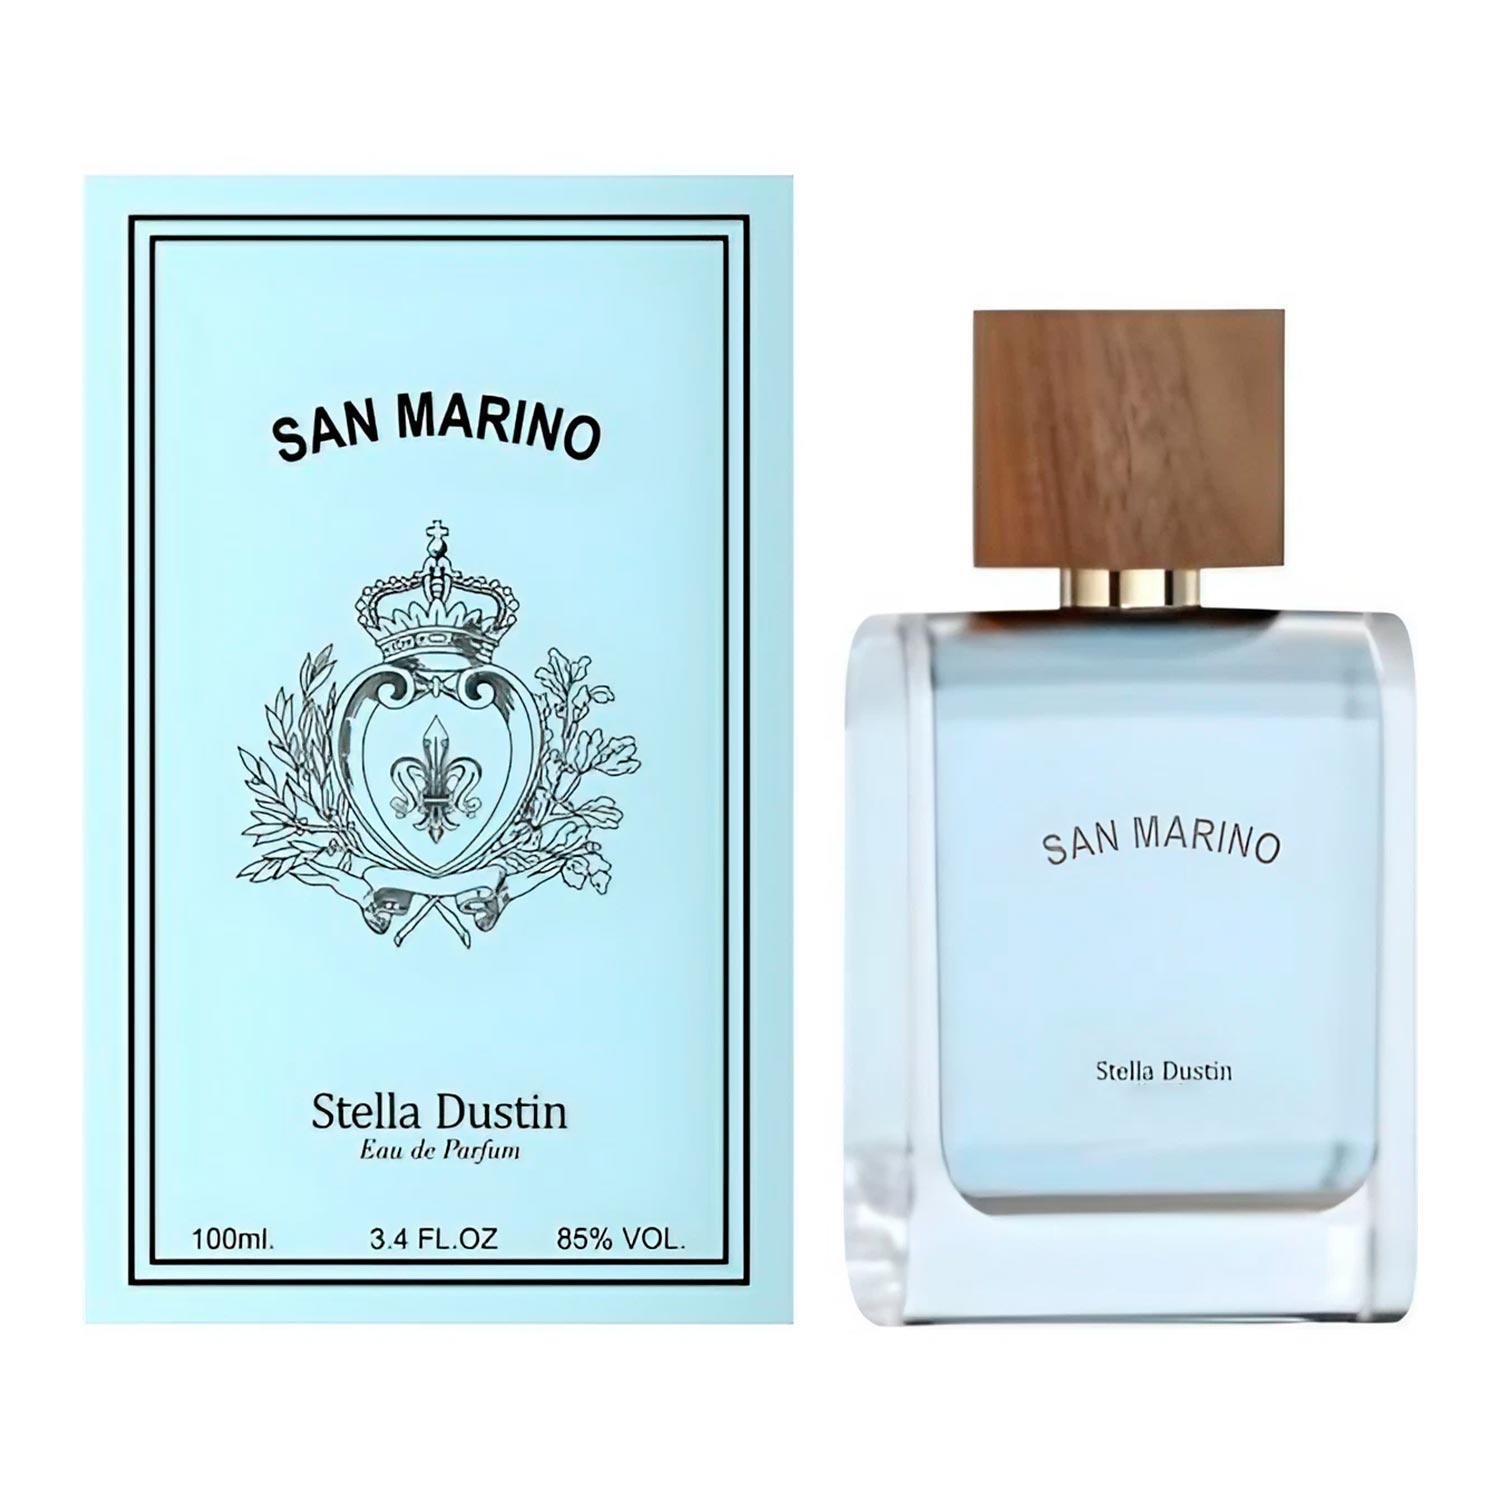 Perfume Stella Dustin San Marino Eau de Parfum Masculino 100ml